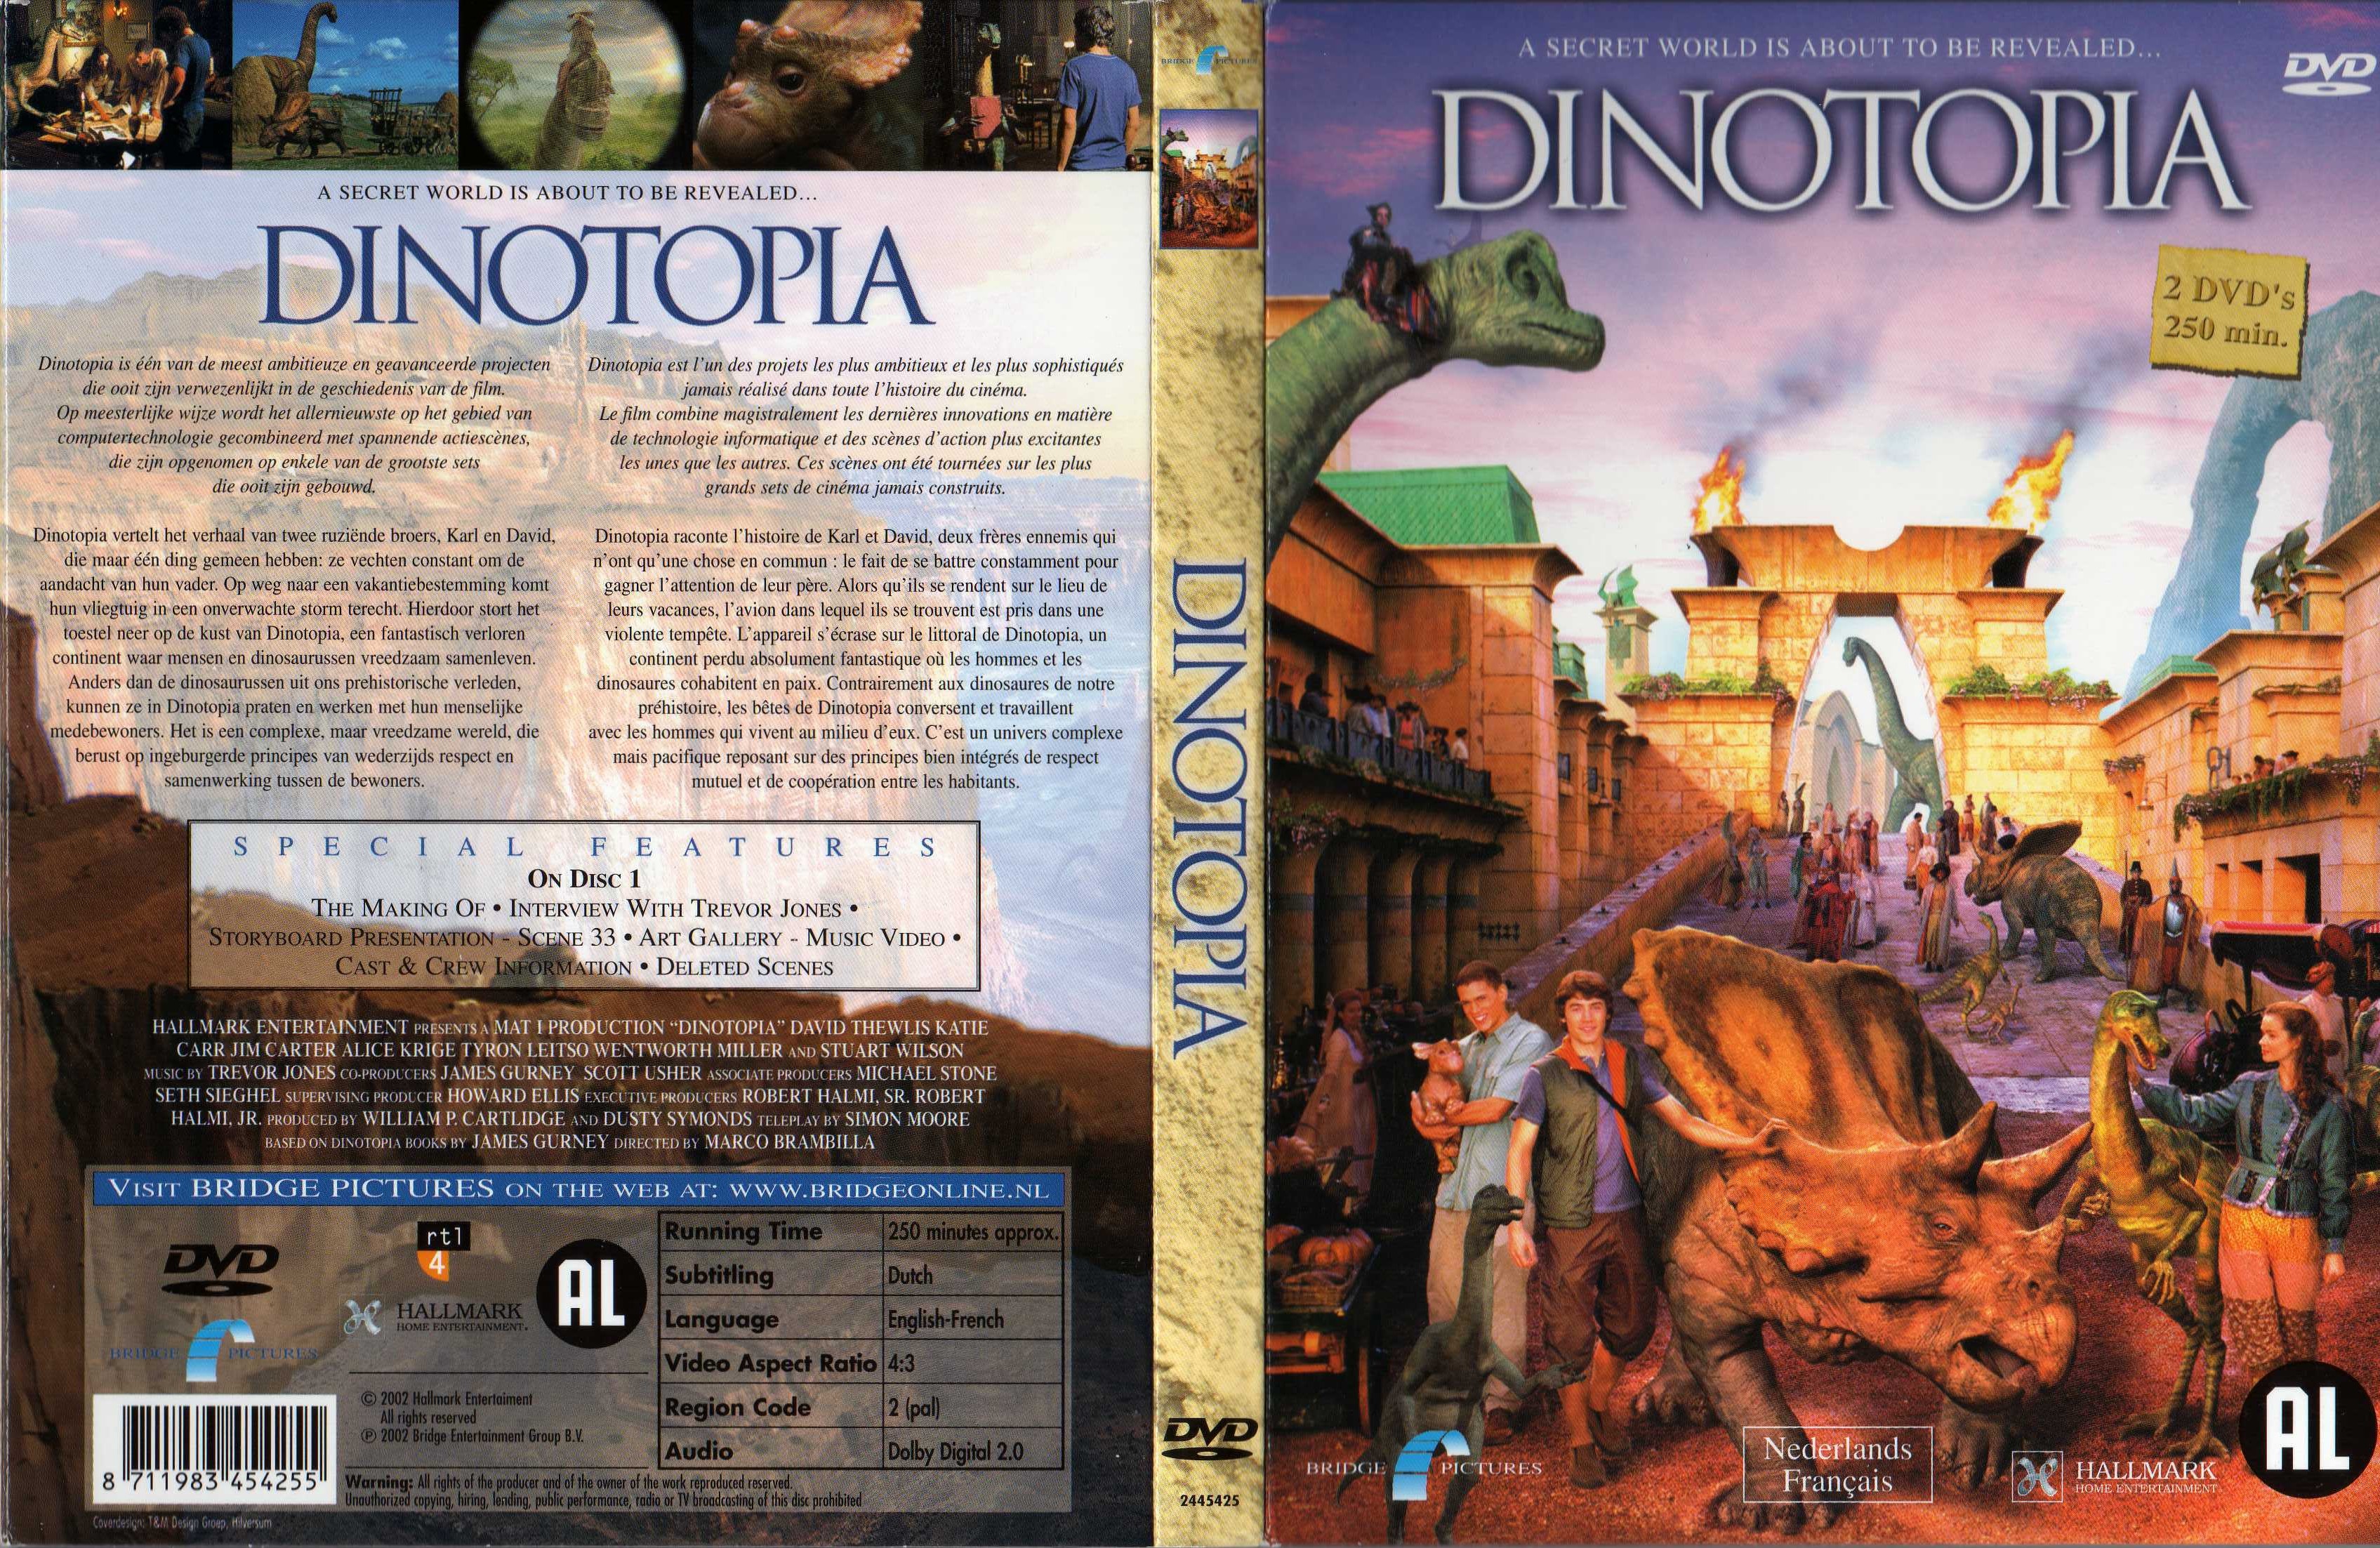 Jaquette DVD Dinotopia 1 v2